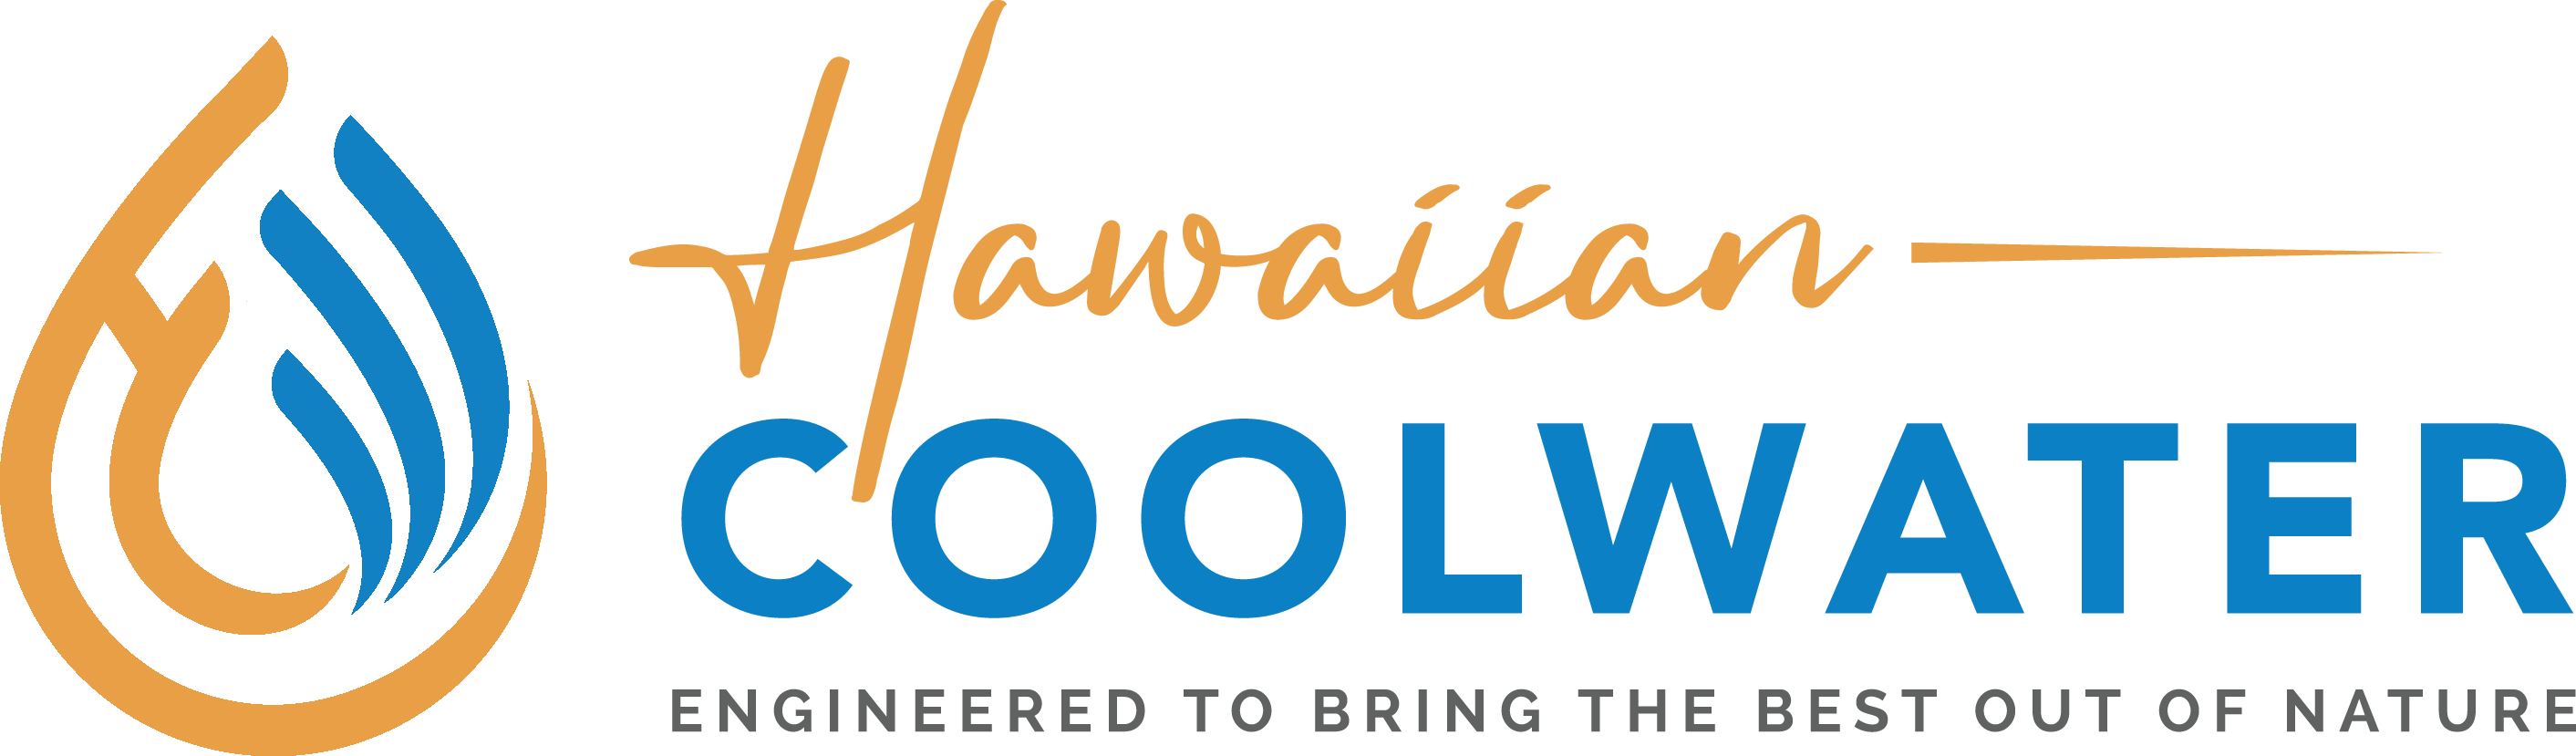 Hawaiian Cool Water logo